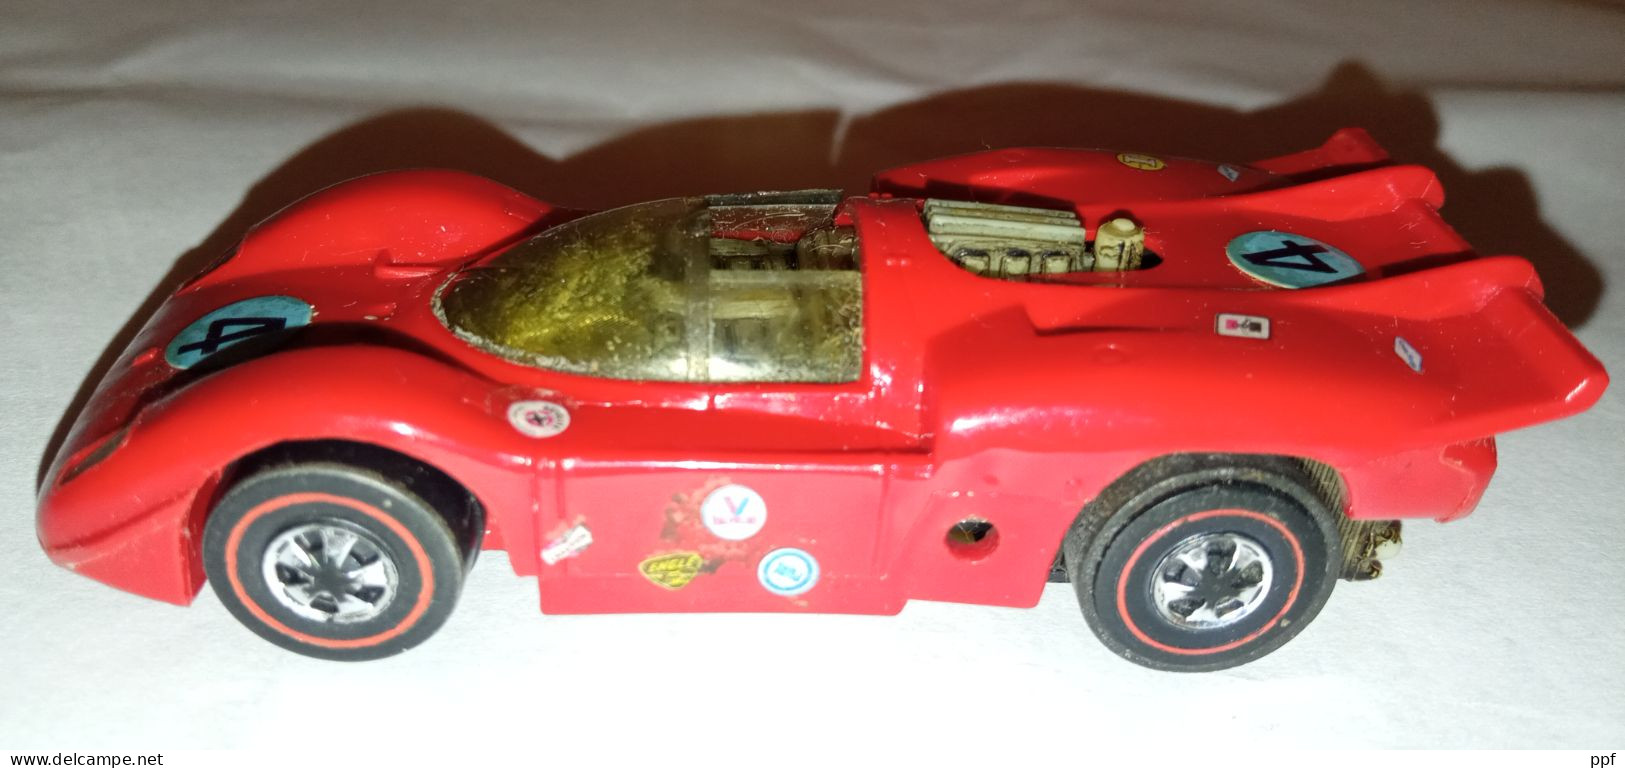 Hotwheels Redline Ferrari Very Rare! - HotWheels